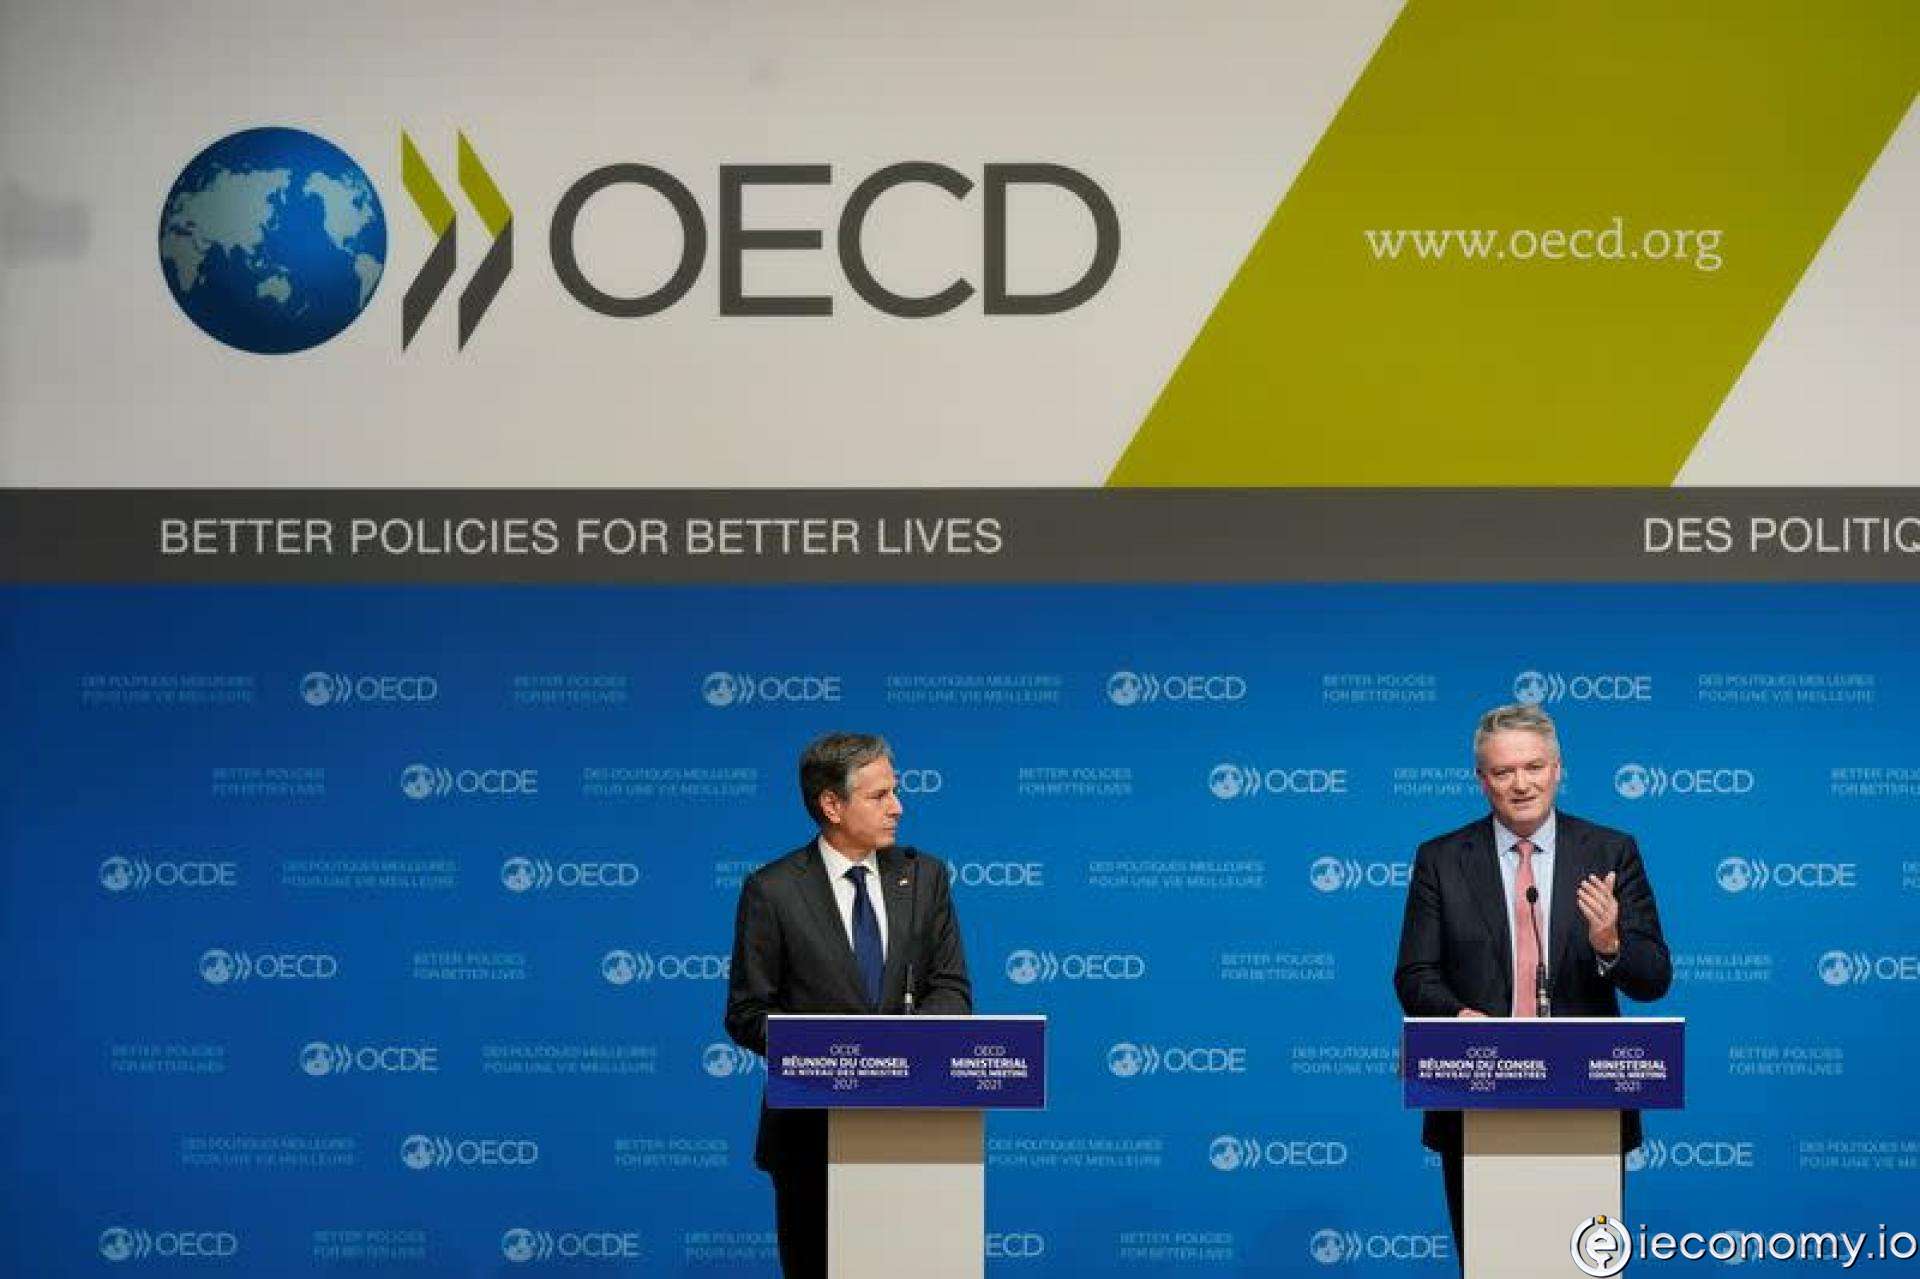 İrlanda, küresel asgari vergi konusunda OECD anlaşmasına katılıyor